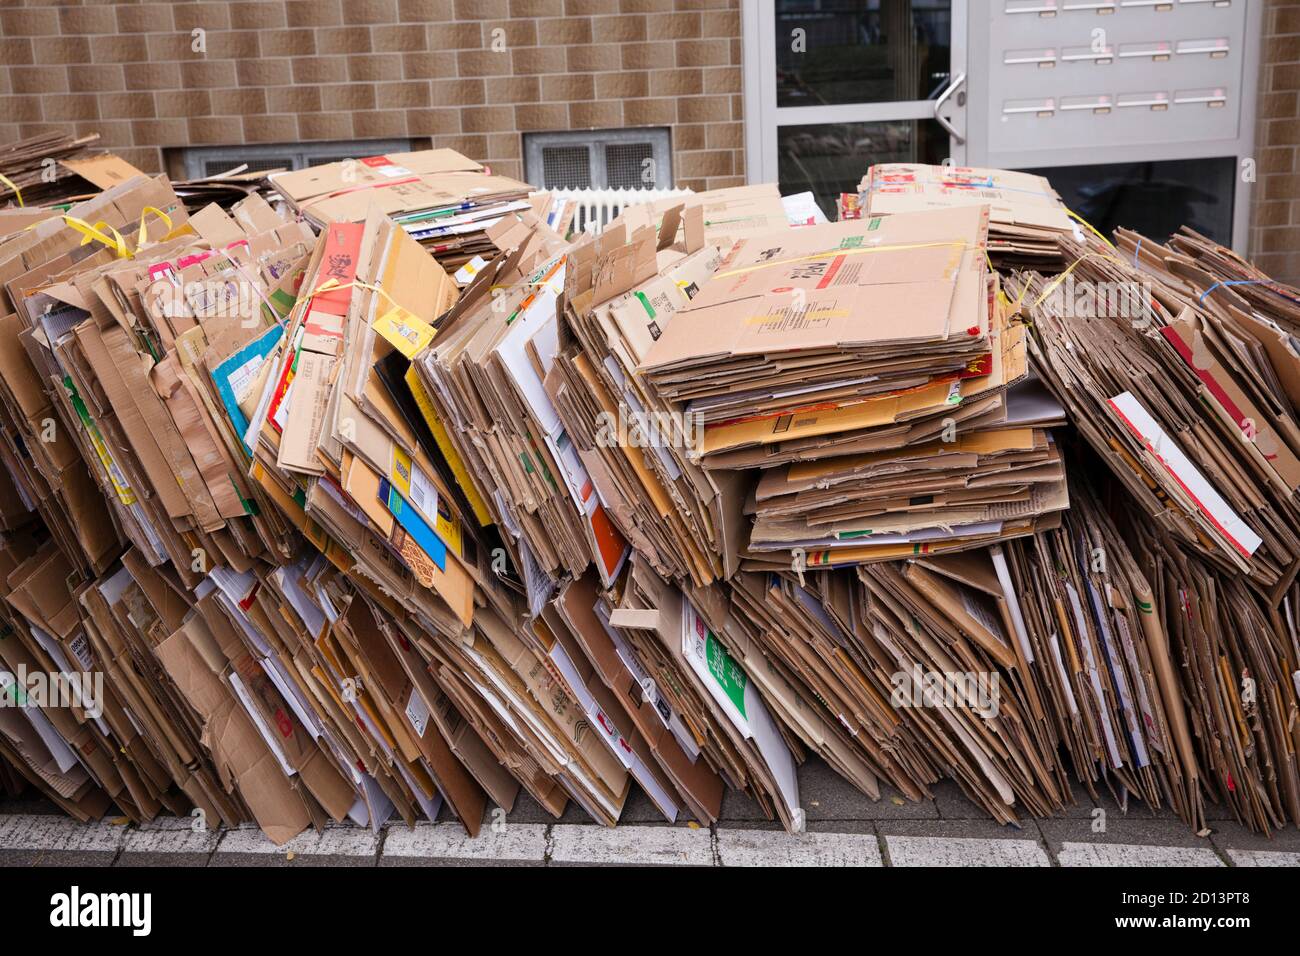 Zerlegte und gebündelte Kartons liegen auf dem Bürgersteig zur Entsorgung, Köln, Deutschland. Zerlegte und gebuendelte Pappkartons liegen zum Abtransport Stockfoto